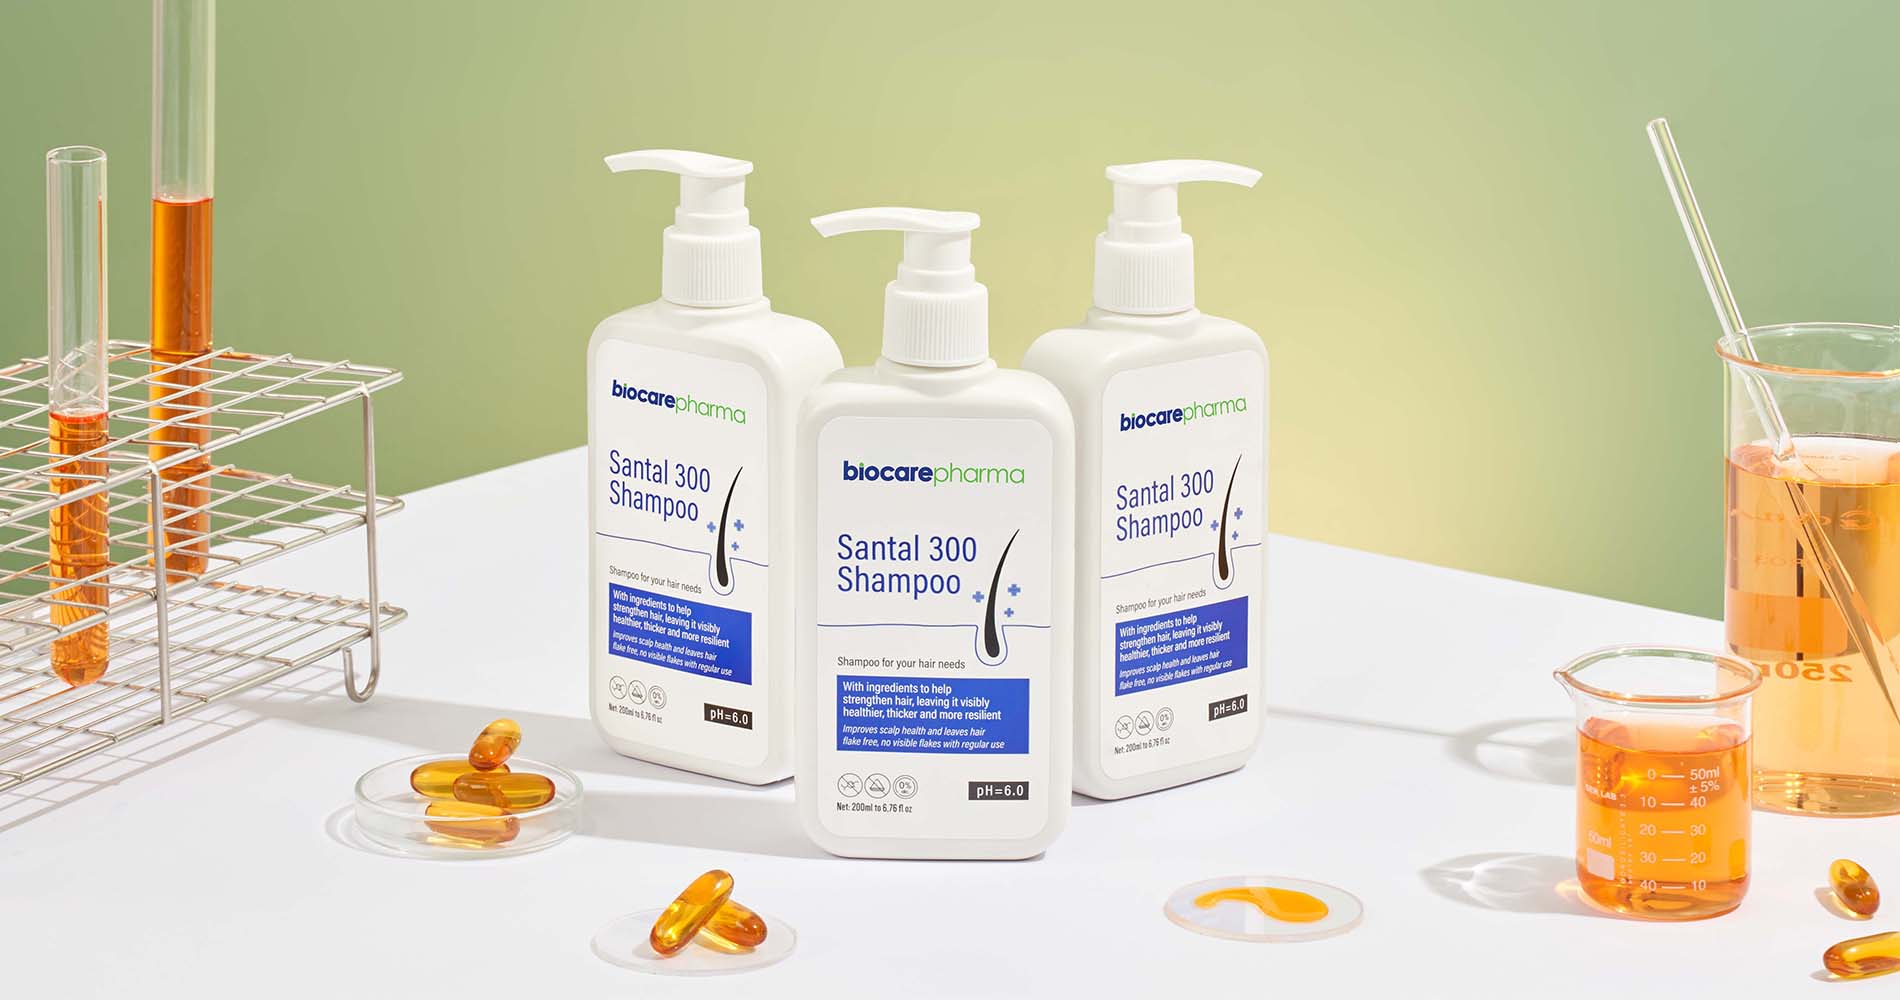 Dầu gội Biocare Pharma – Tạo sự khác biệt dẫn lối thành công cho thương hiệu Biocare - 3